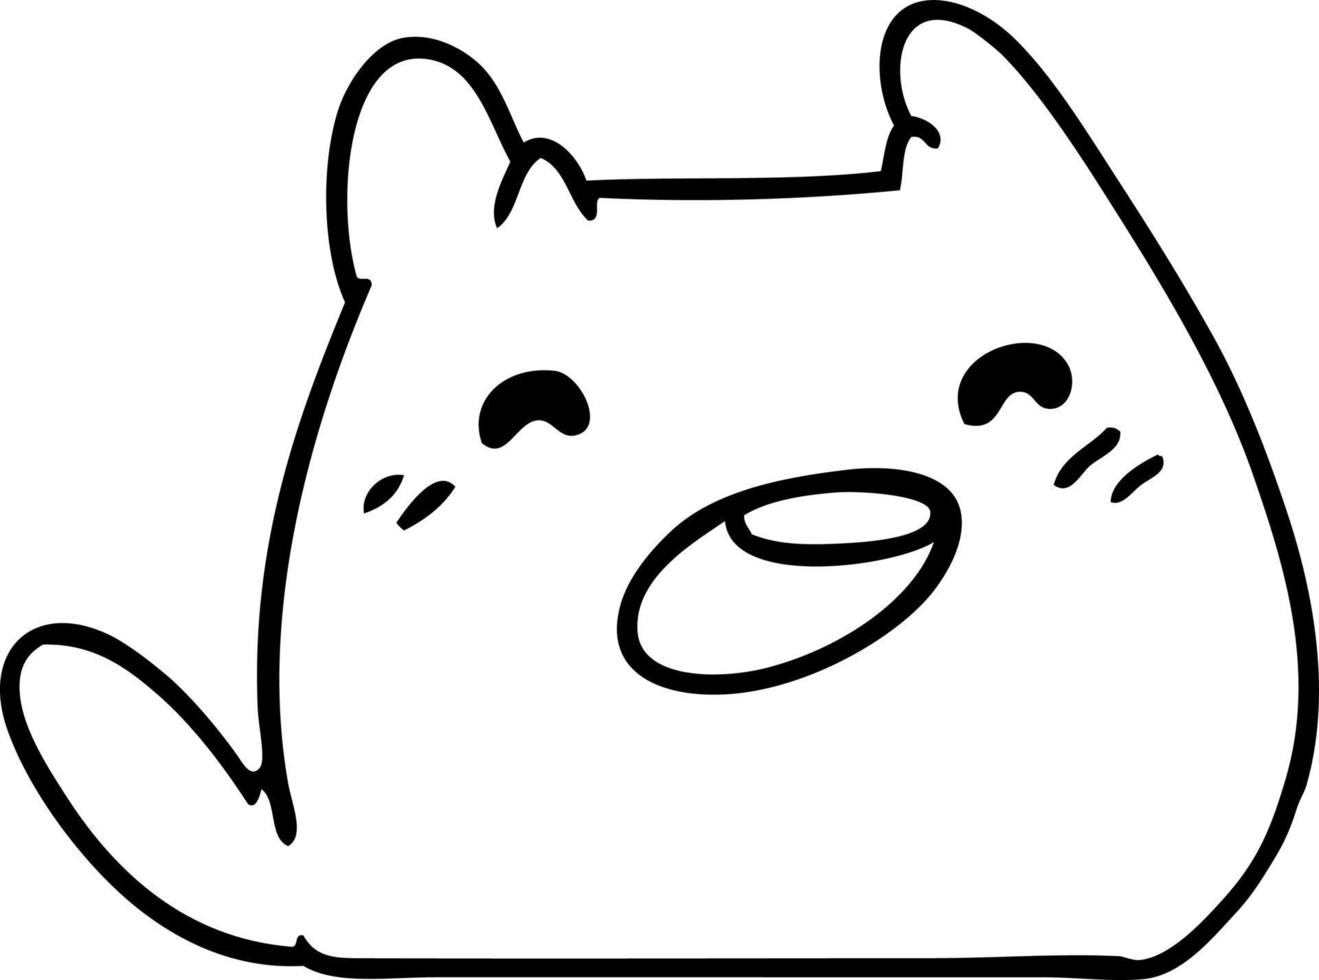 dibujo lineal de un gato kawaii vector